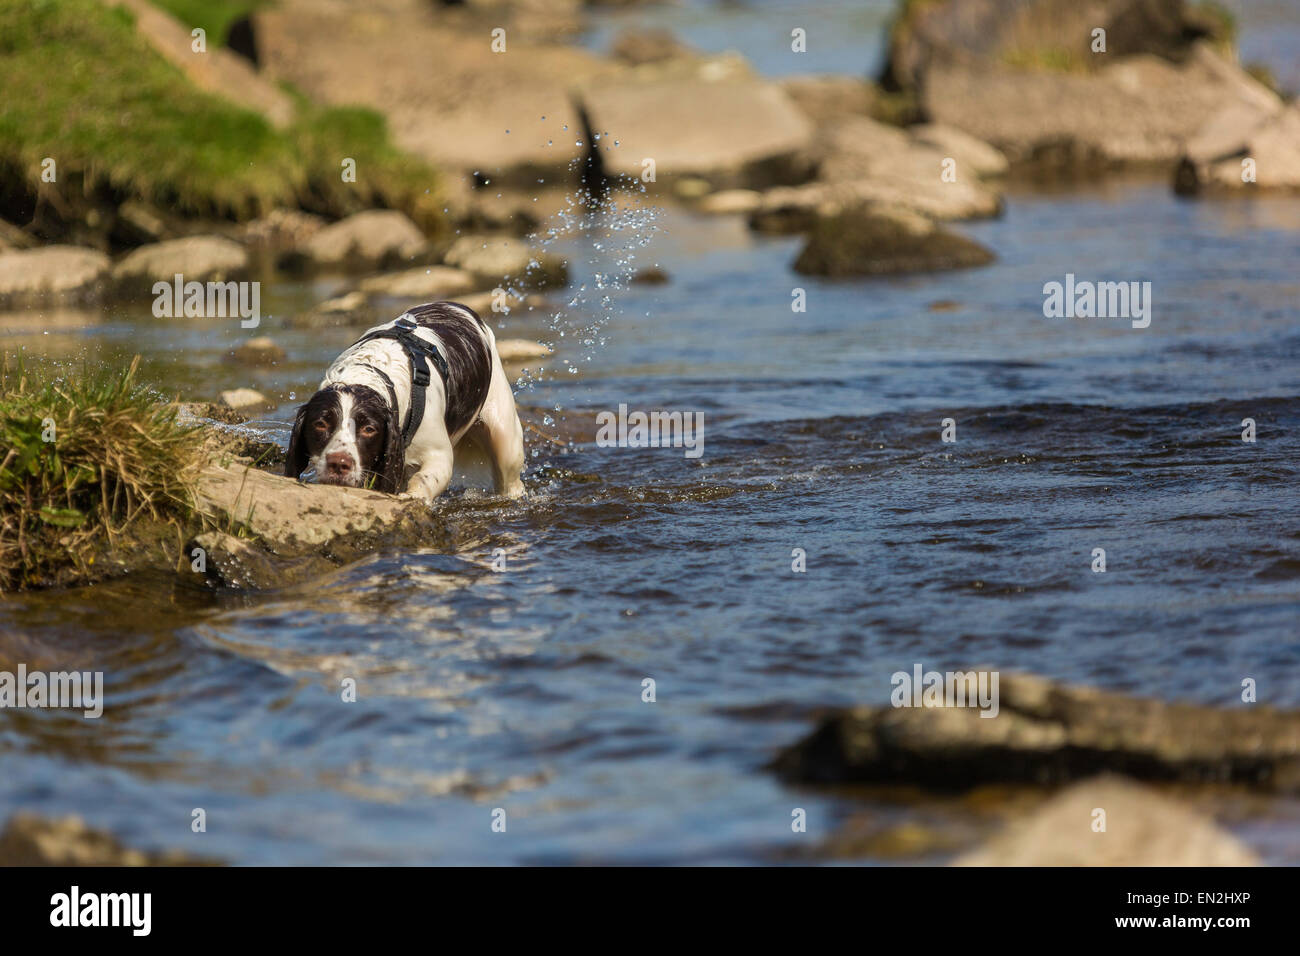 Wet inglese bianco e marrone di fegato springer spaniel ricerca nel fiume. Foto Stock